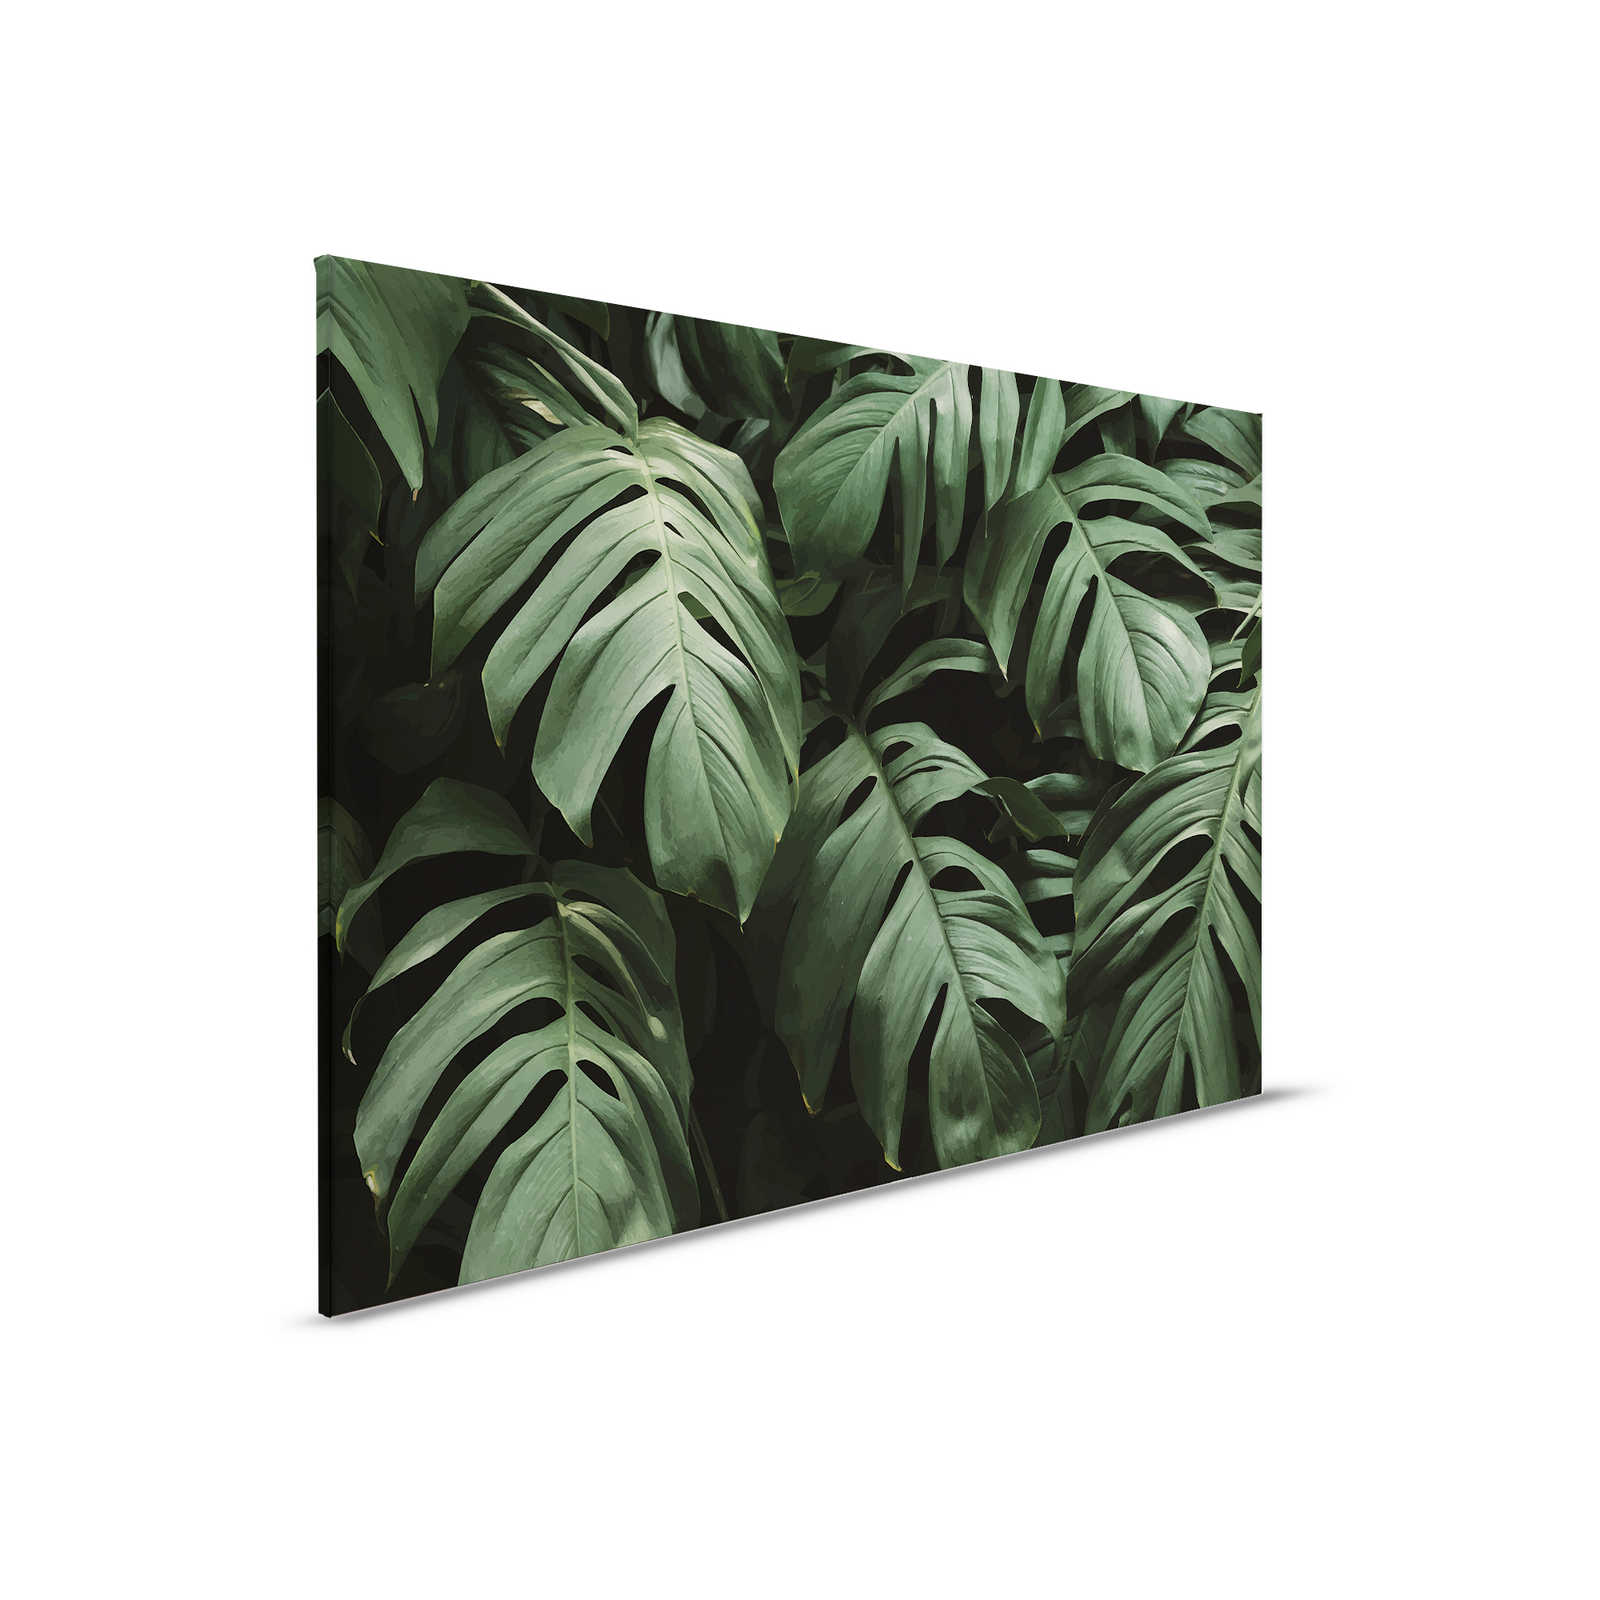 Canvas schilderij tropische jungle bladeren close-up - 0,90 m x 0,60 m
